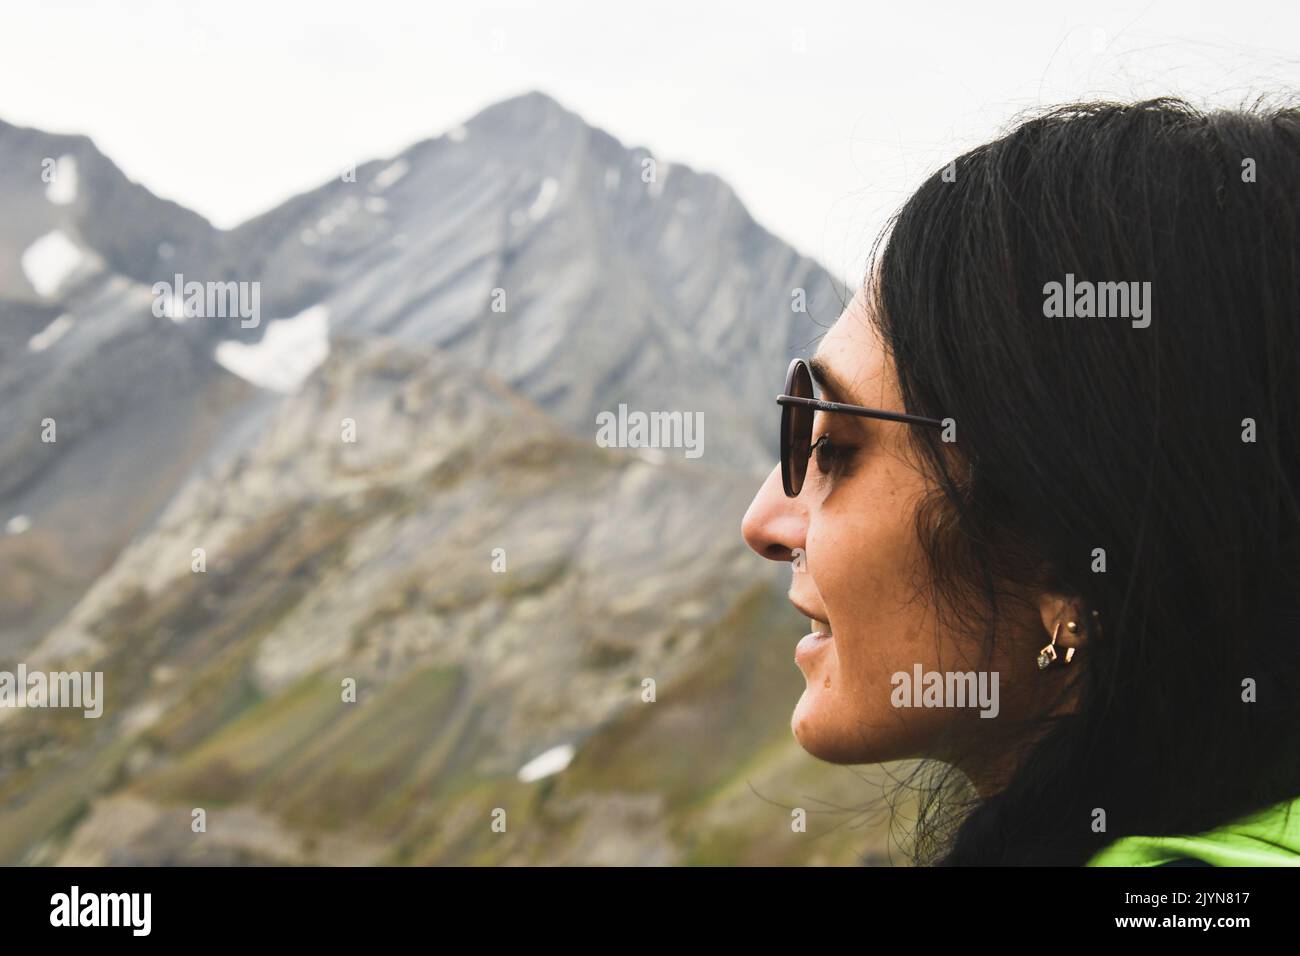 Primo piano donna caucasica faccia occhi chiusi inalare fresca montagne aria in natura outdoor.Altitude adattamento respiratorio concept.Godetevi la vita e il viaggio Foto Stock